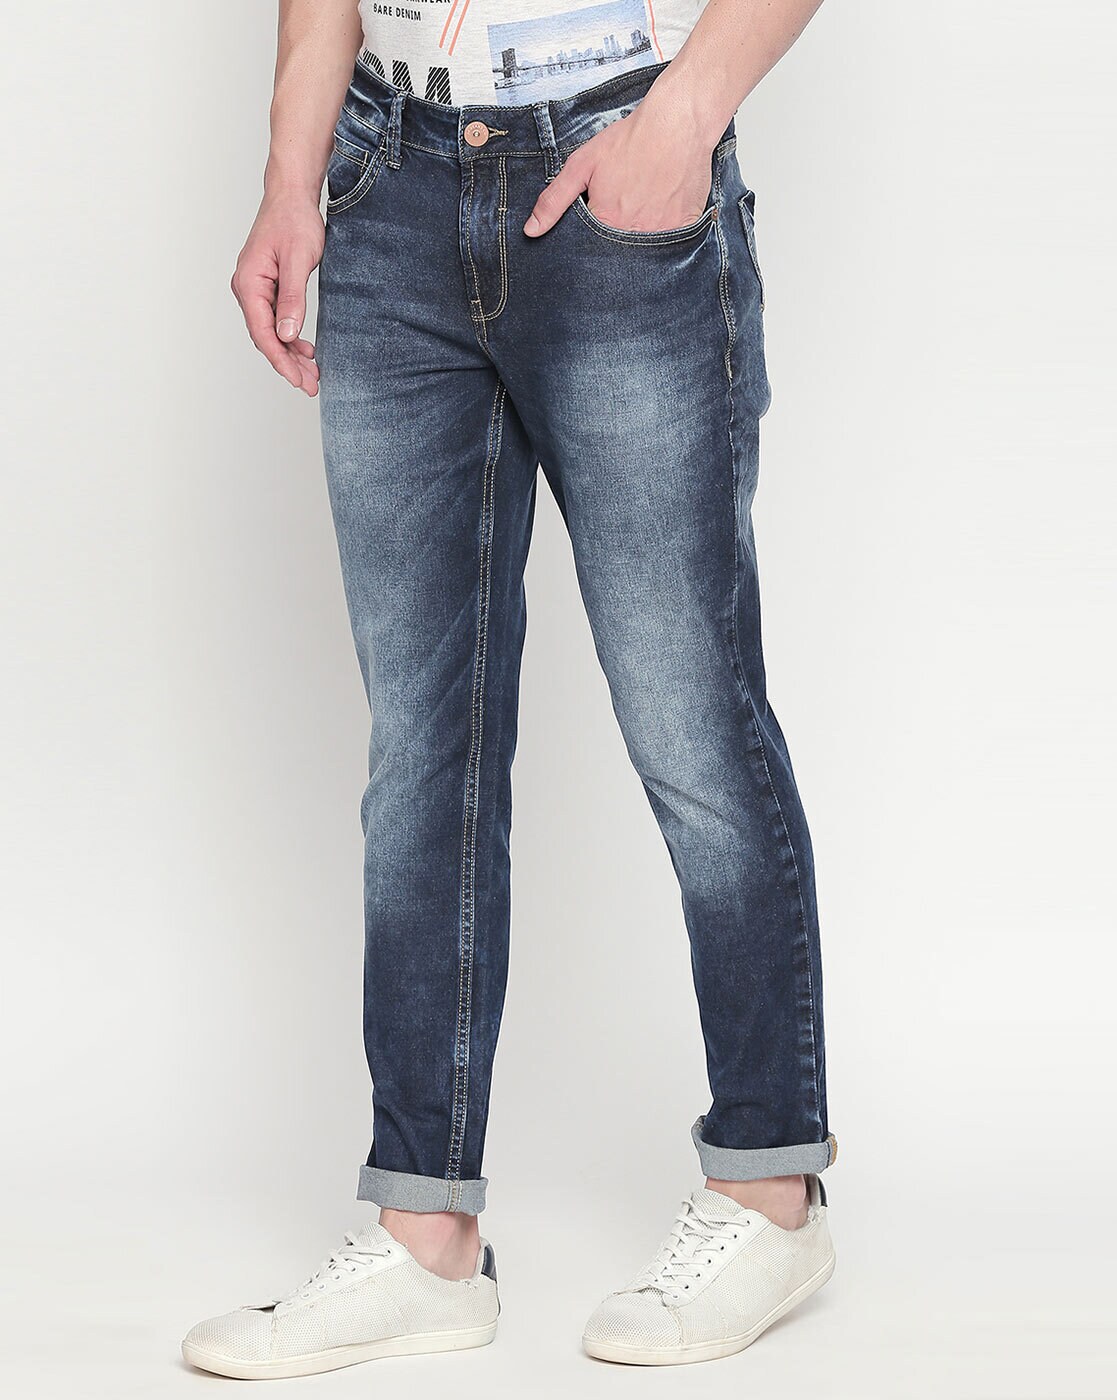 Buy Navy Jeans for Men by ALLEN SOLLY Online | Ajio.com